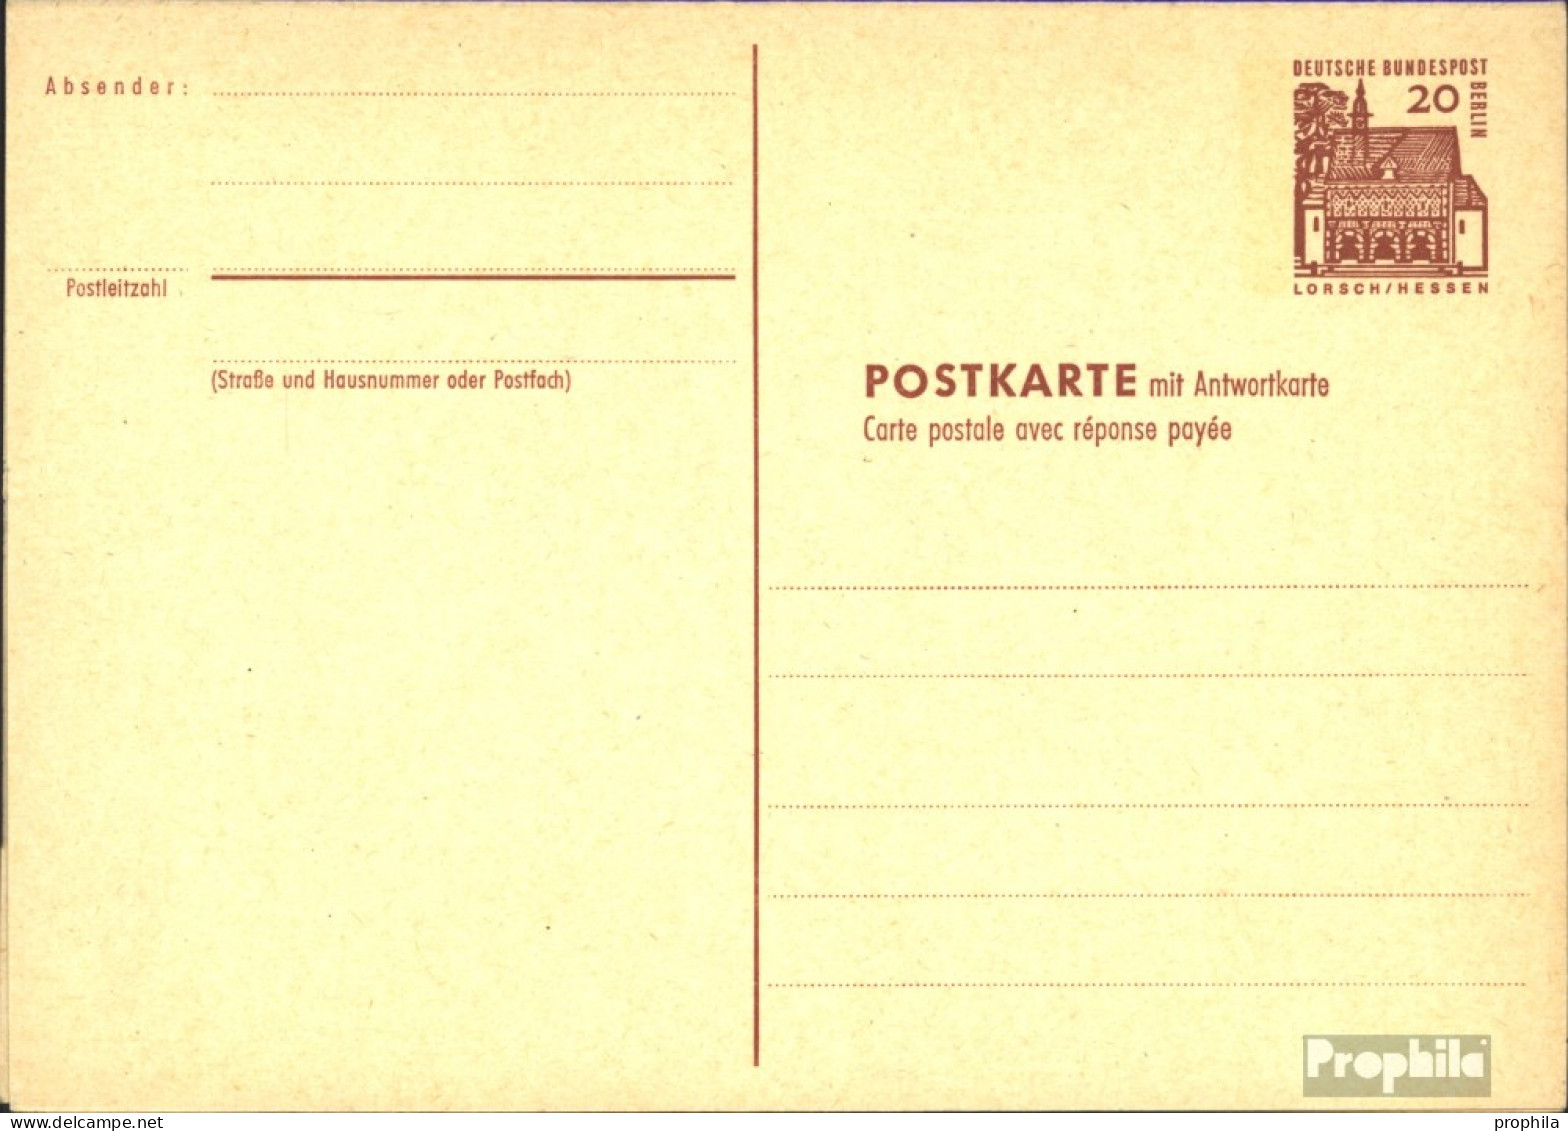 Berlin (West) P67 Amtliche Postkarte Gefälligkeitsgestempelt Gebraucht 1965 Dt. Bauwerke I - Postcards - Used